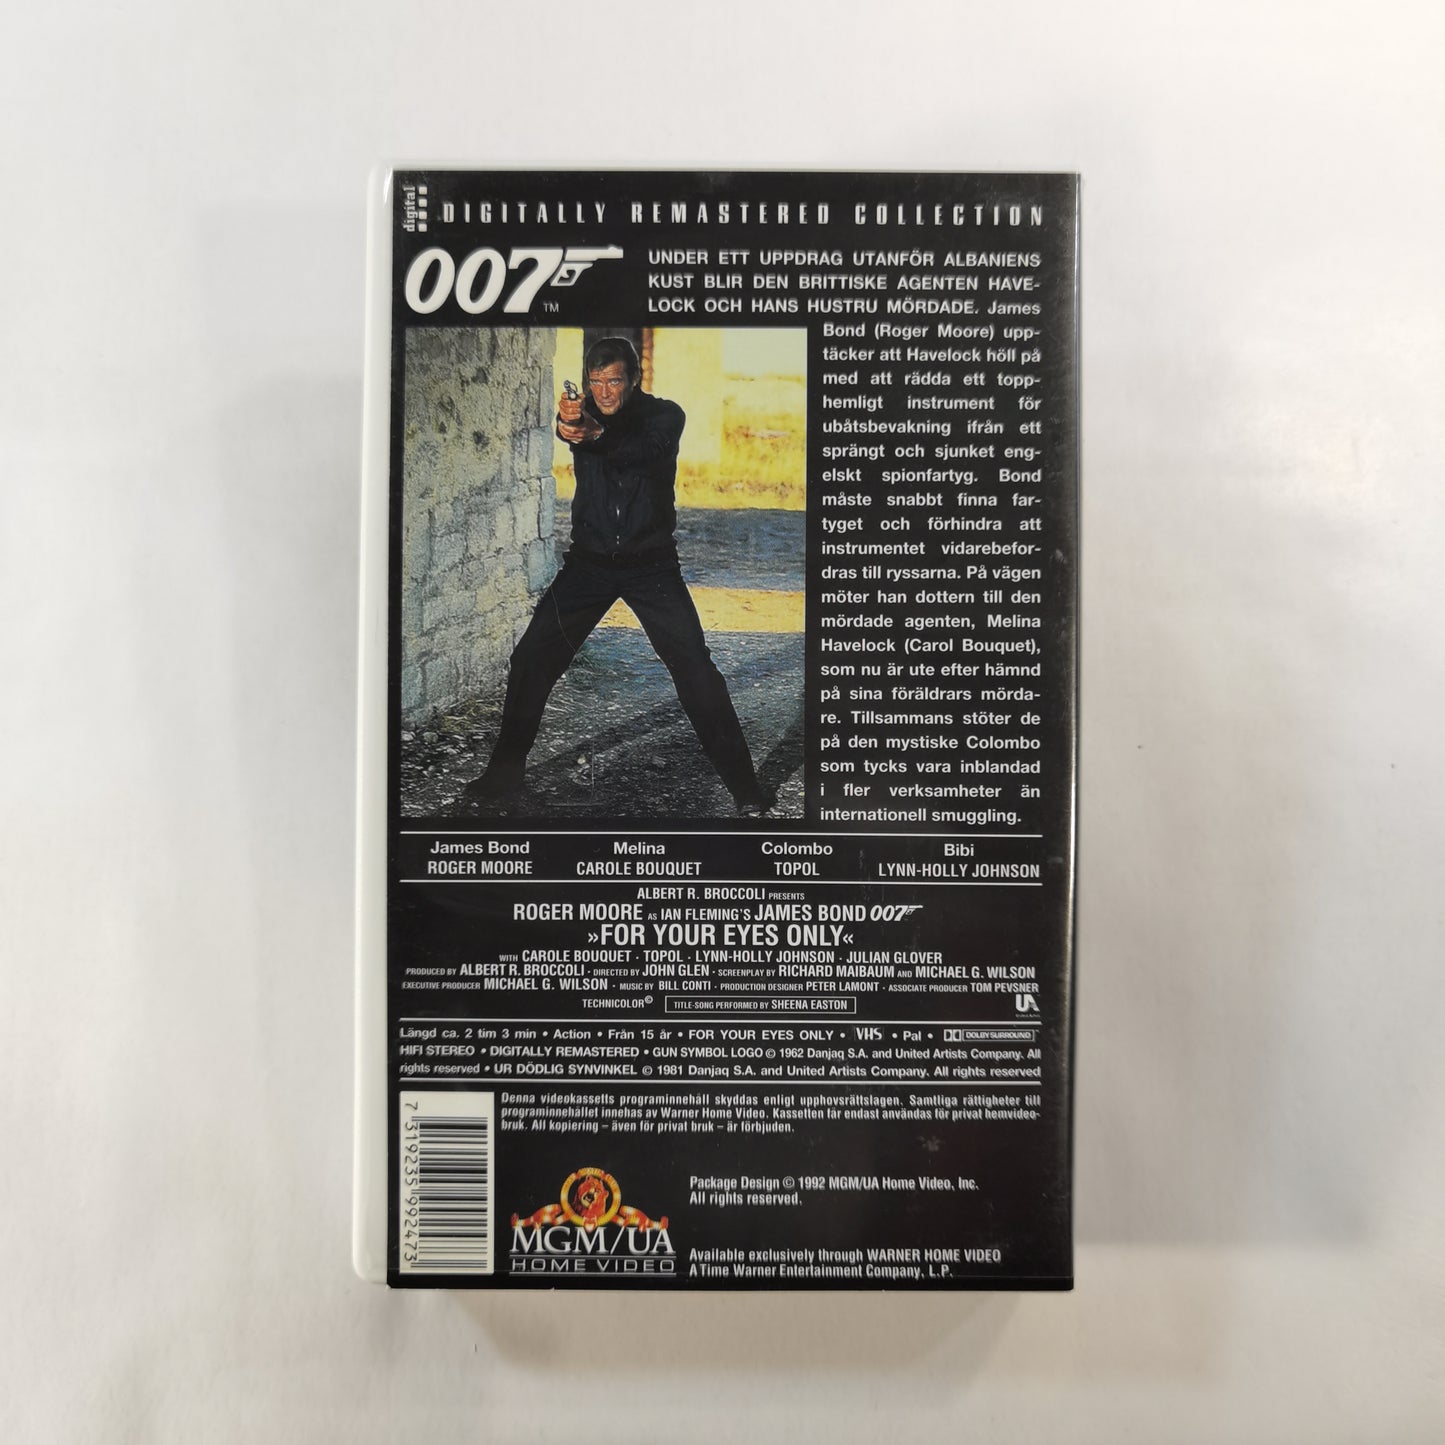 007: For Your Eyes Only ( Ur Dödlig Synvinkel ) (1981) - VHS SE 1992 Digitally Remastered Collection